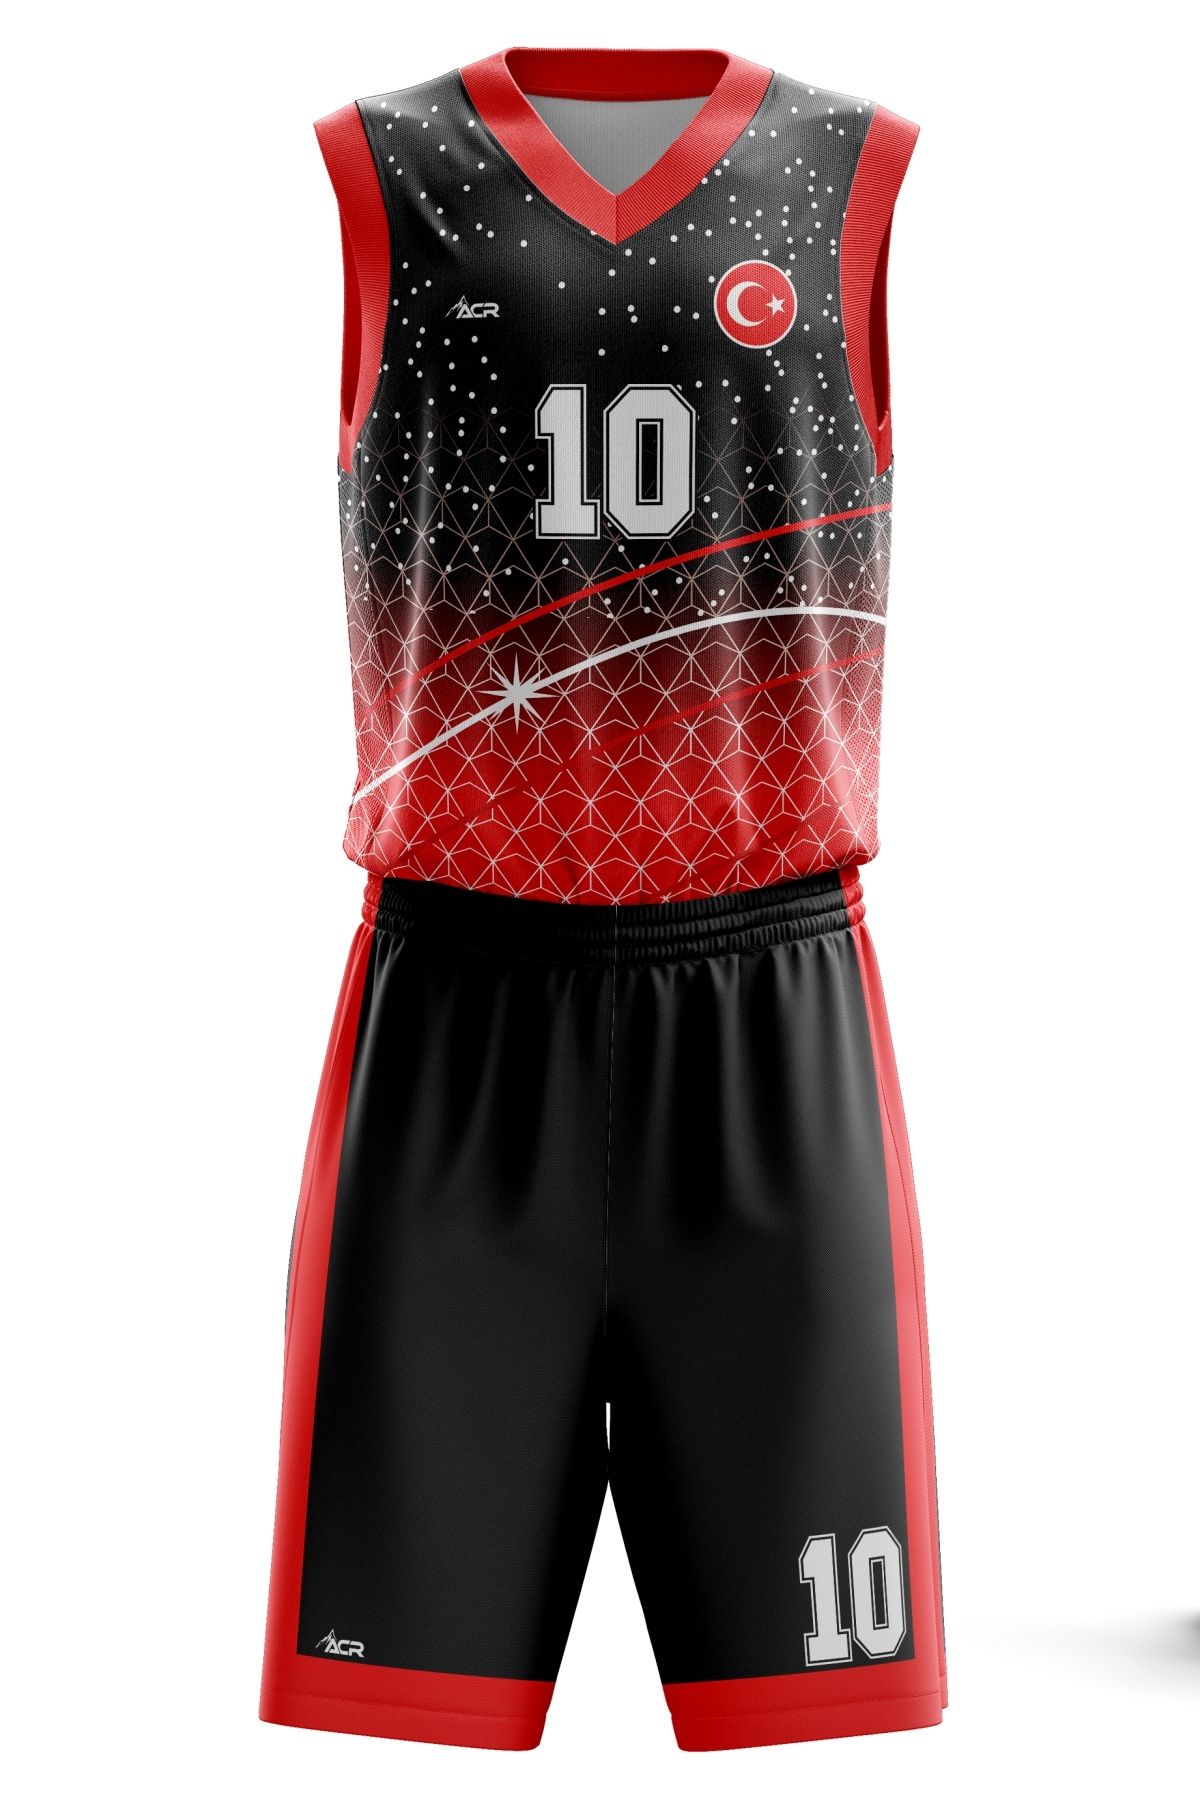 ACR Giyim Tekstil Forma Baskı Basketbol Forması  Kişiye Özel Basketbol Forması Alt Üst Takım Hediyelik Forma B2402 Kırmızı Siyah